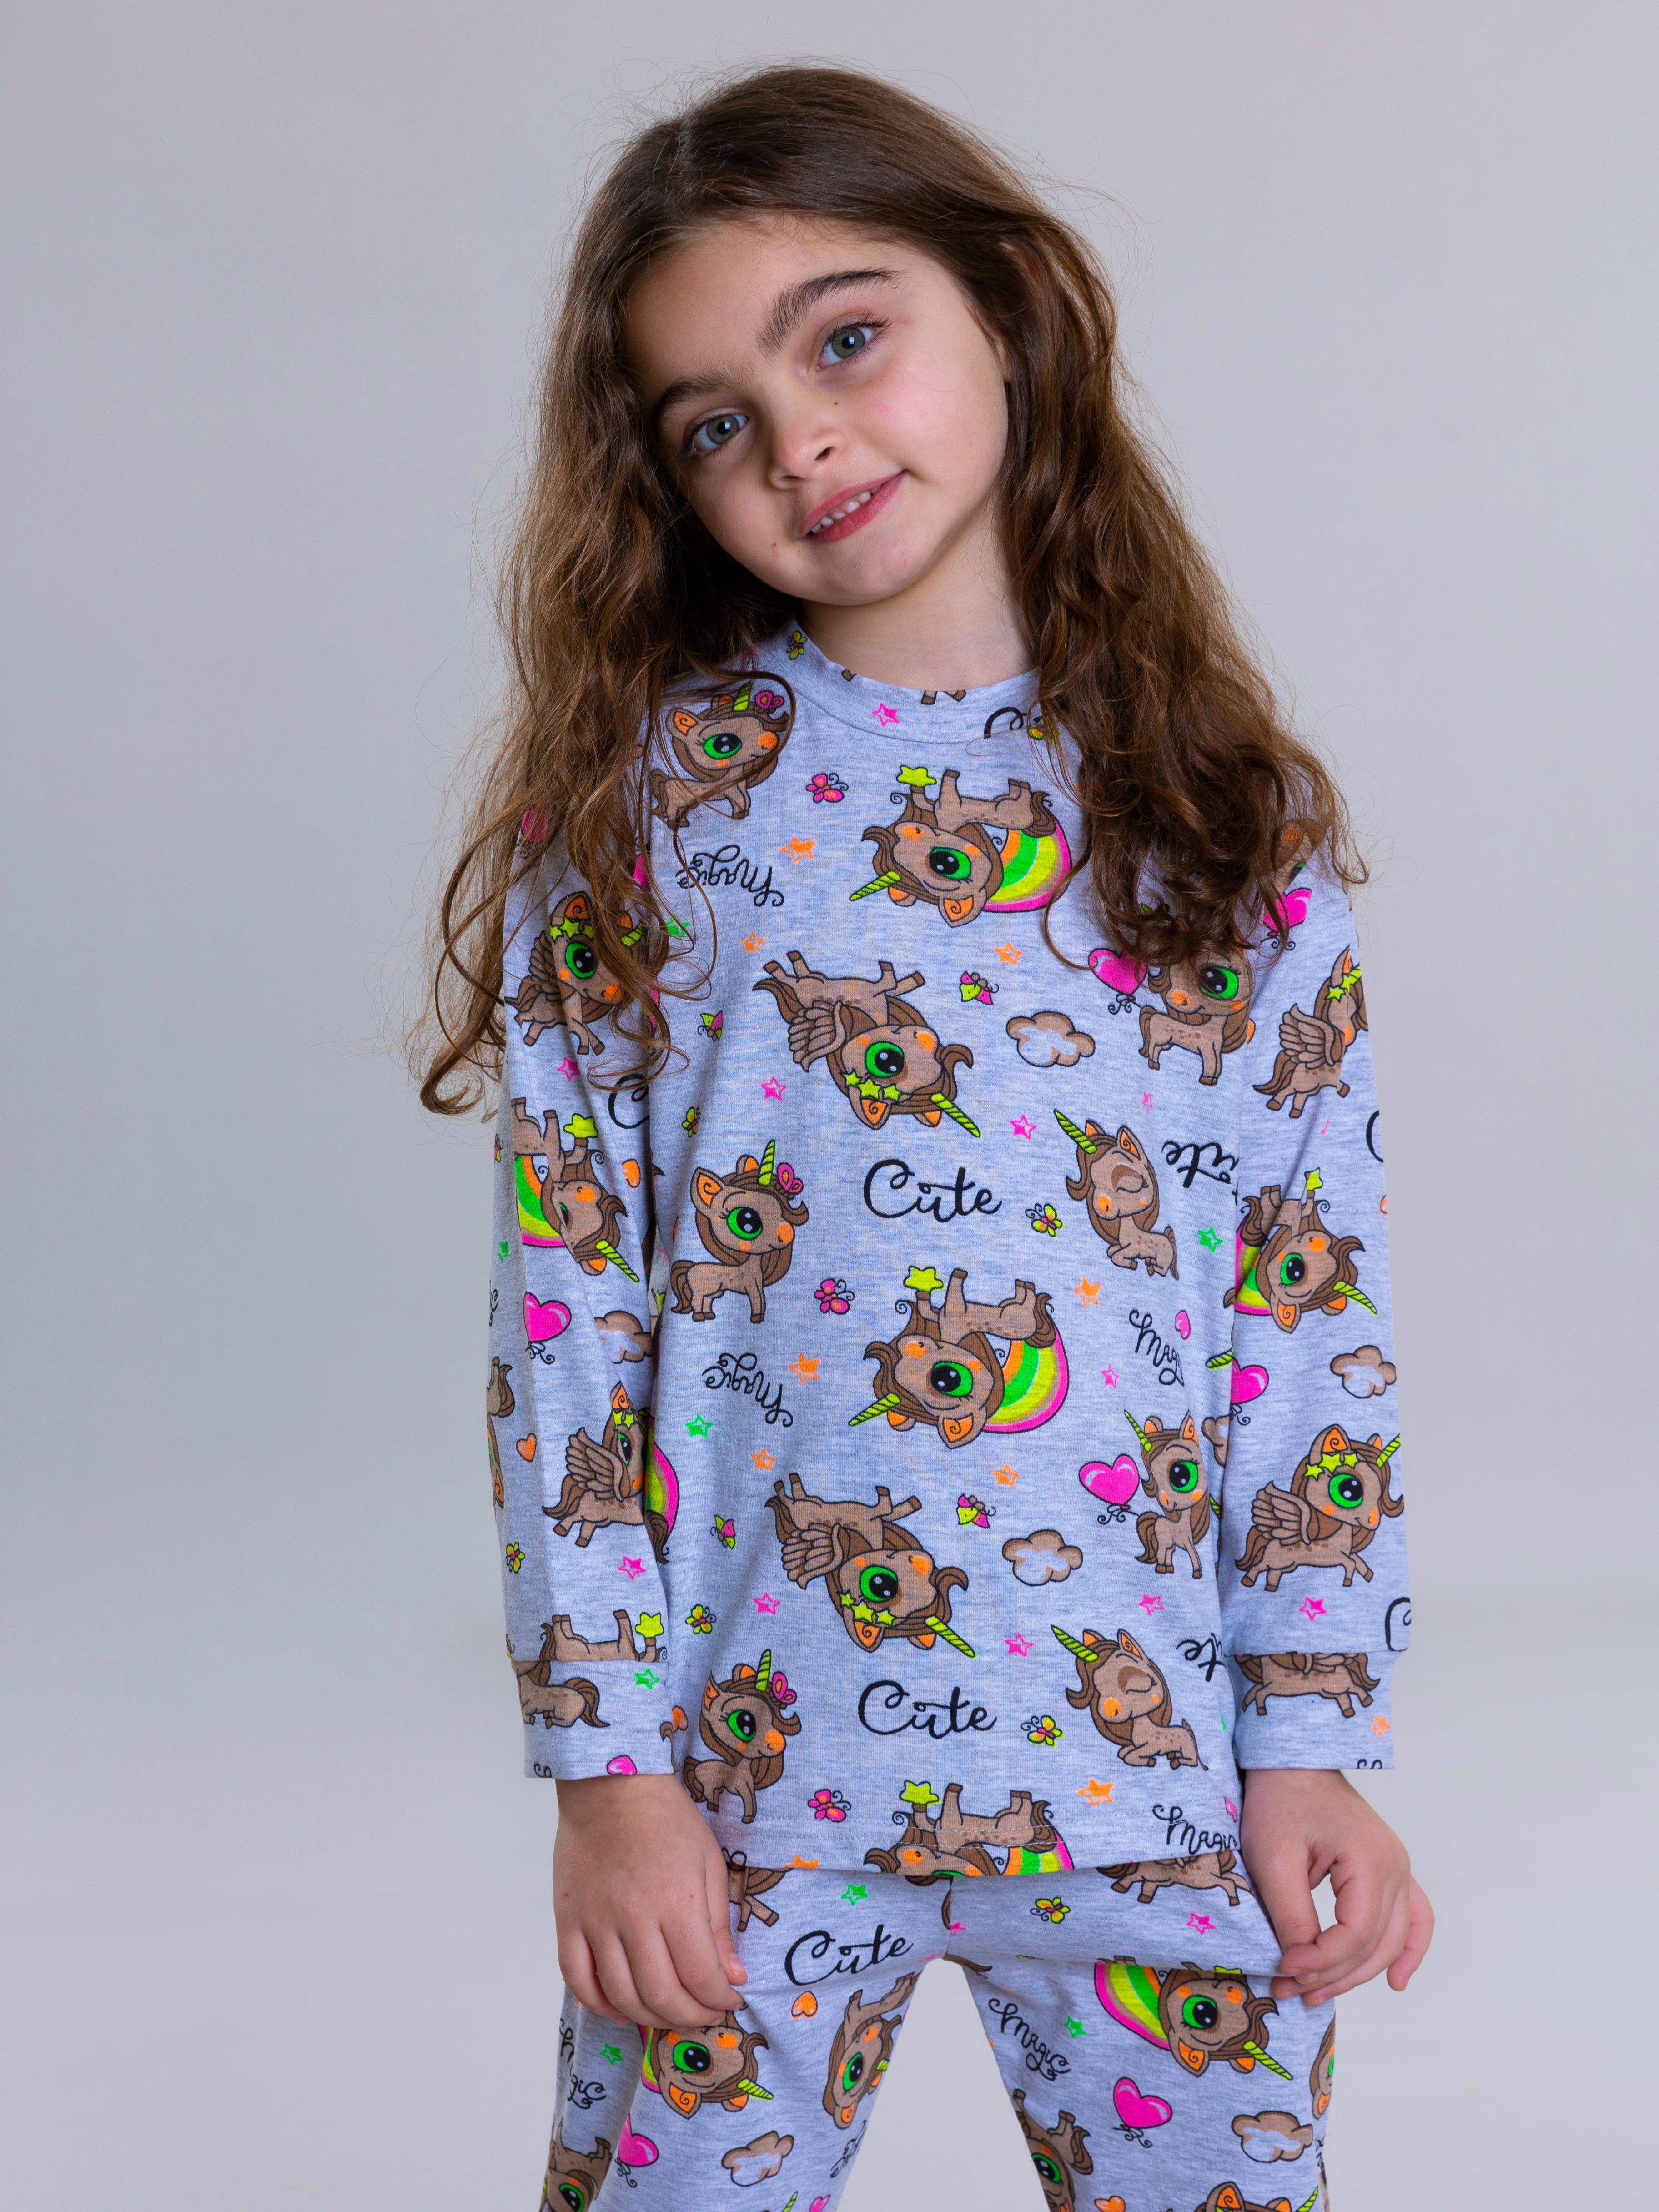 Unicorn Pyjama Set For Girls - Grey - Pear